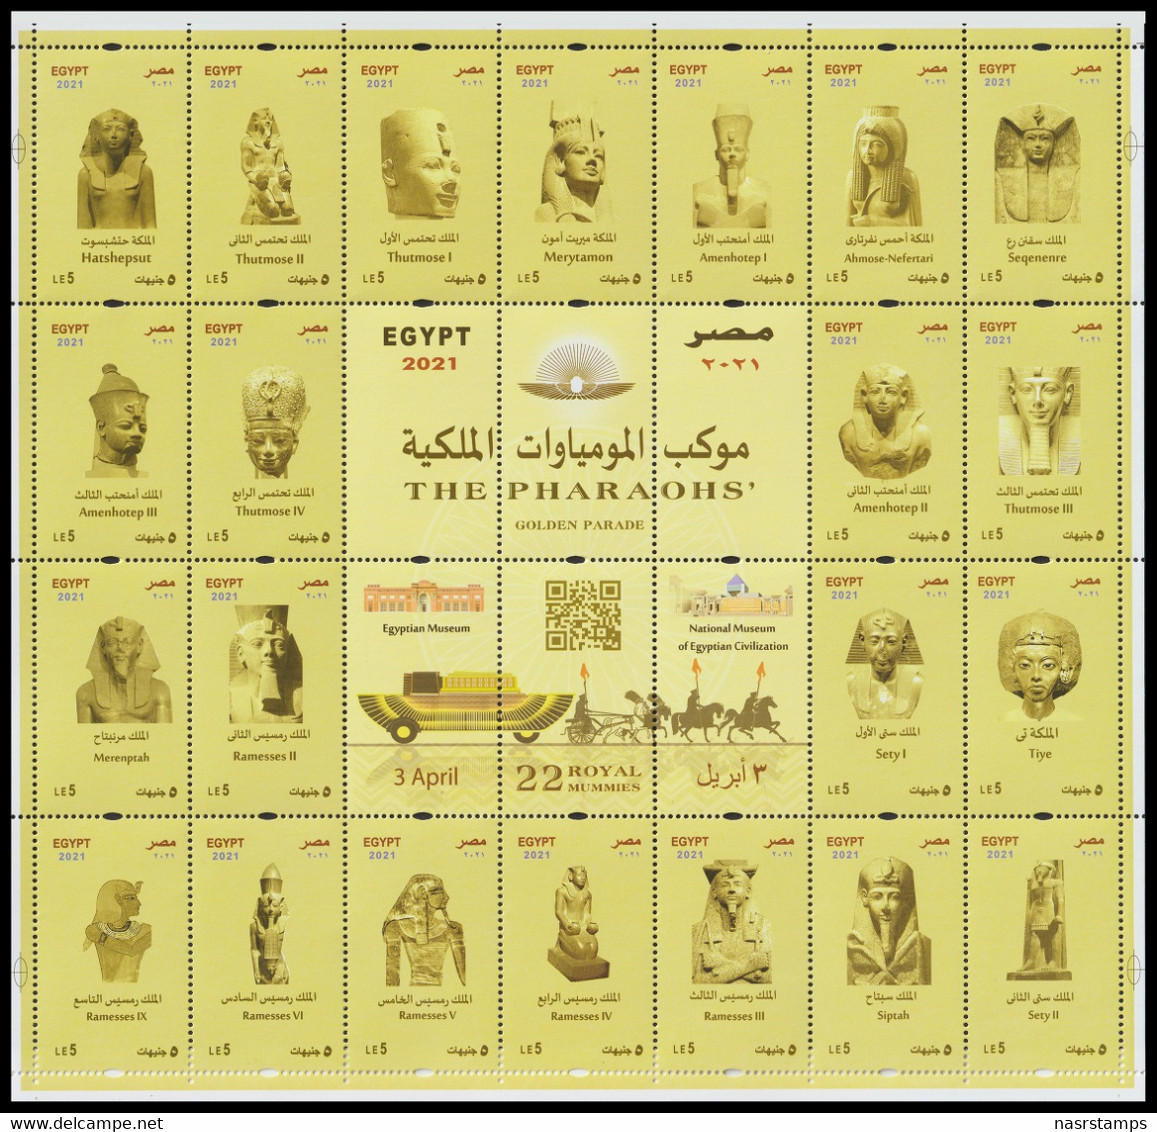 Egypt - 2021 - NEW - Mini Sheet - ( THE PHARAOHS Golden Parade - 3 April 2021 ) - MNH (**) - Egittologia